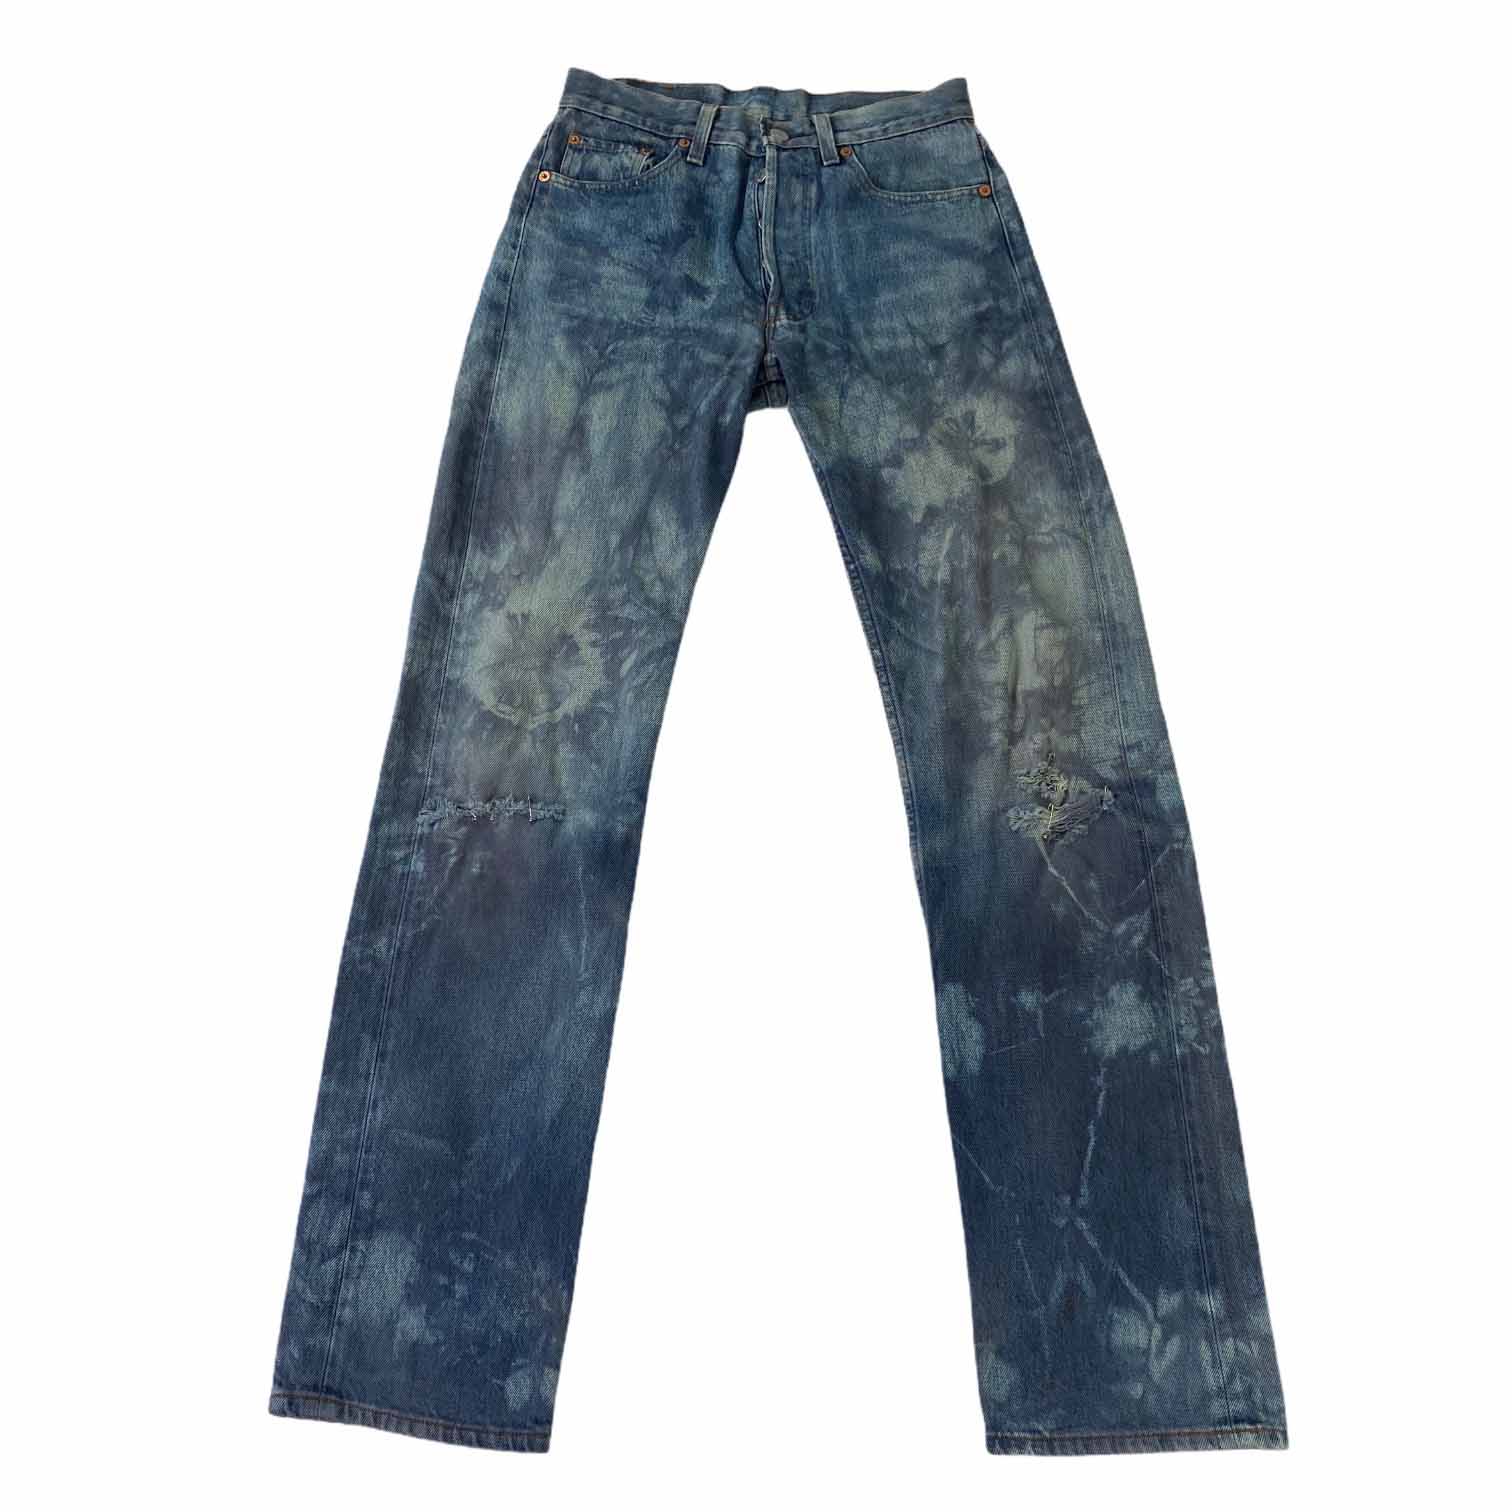 [Levis] (Vintage) 501 Tie-dye Jean - Size 29/36